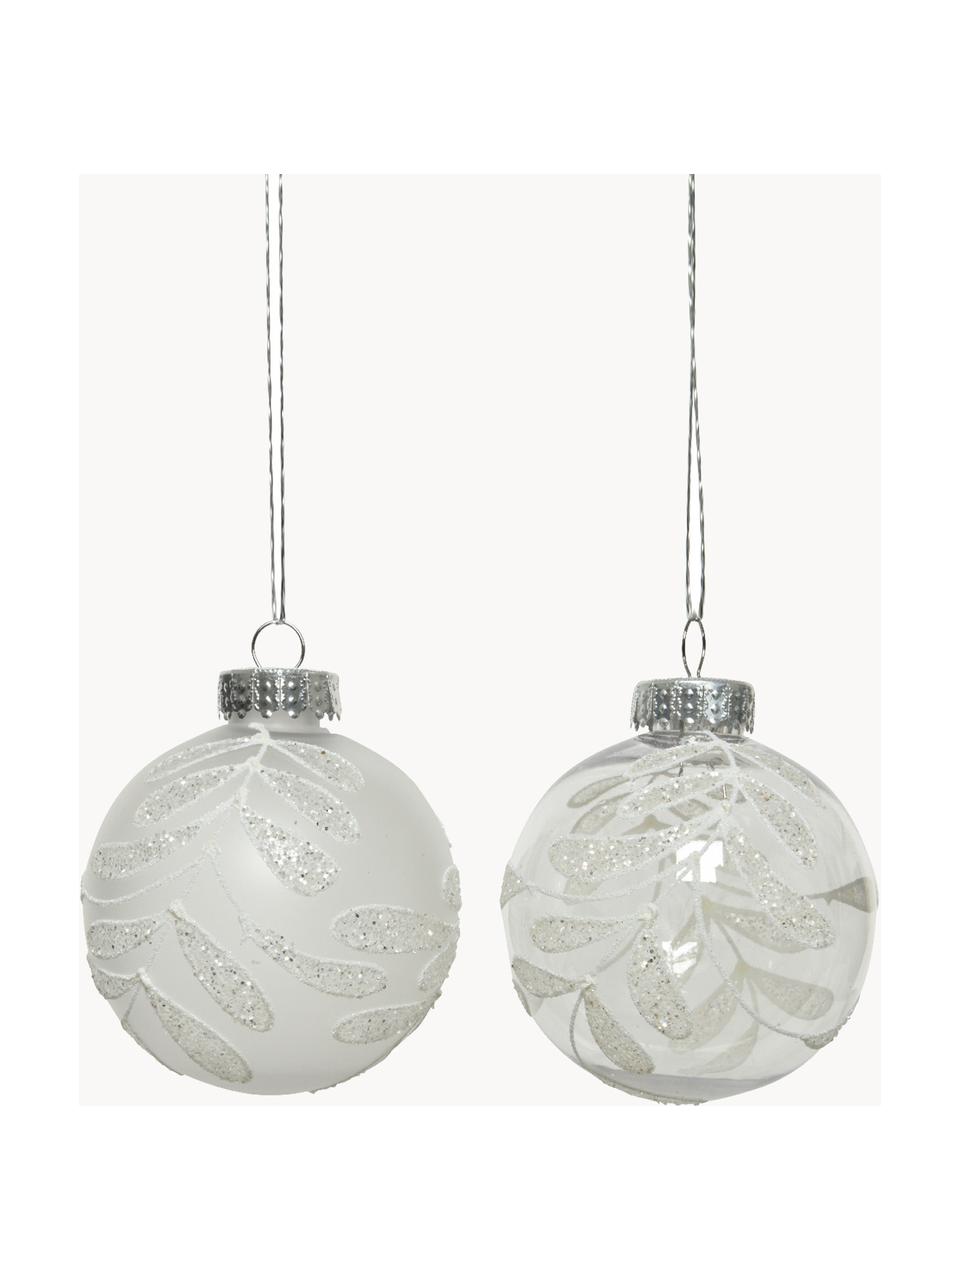 Sada vánočních ozdob Mistletoe, 12 dílů, Umělá hmota, Světle šedá, transparentní, Ø 8 cm